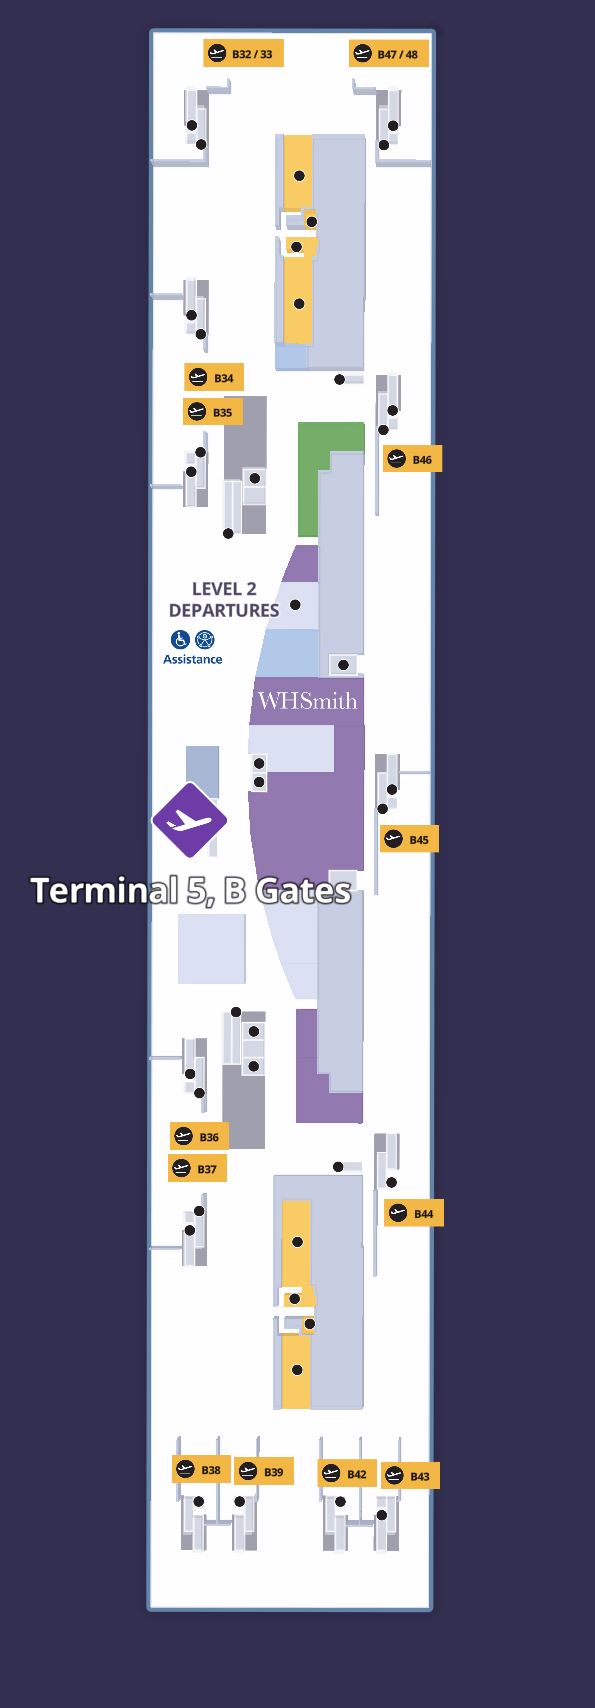 London Heathrow Airport Terminal 5 Gates B32 B48